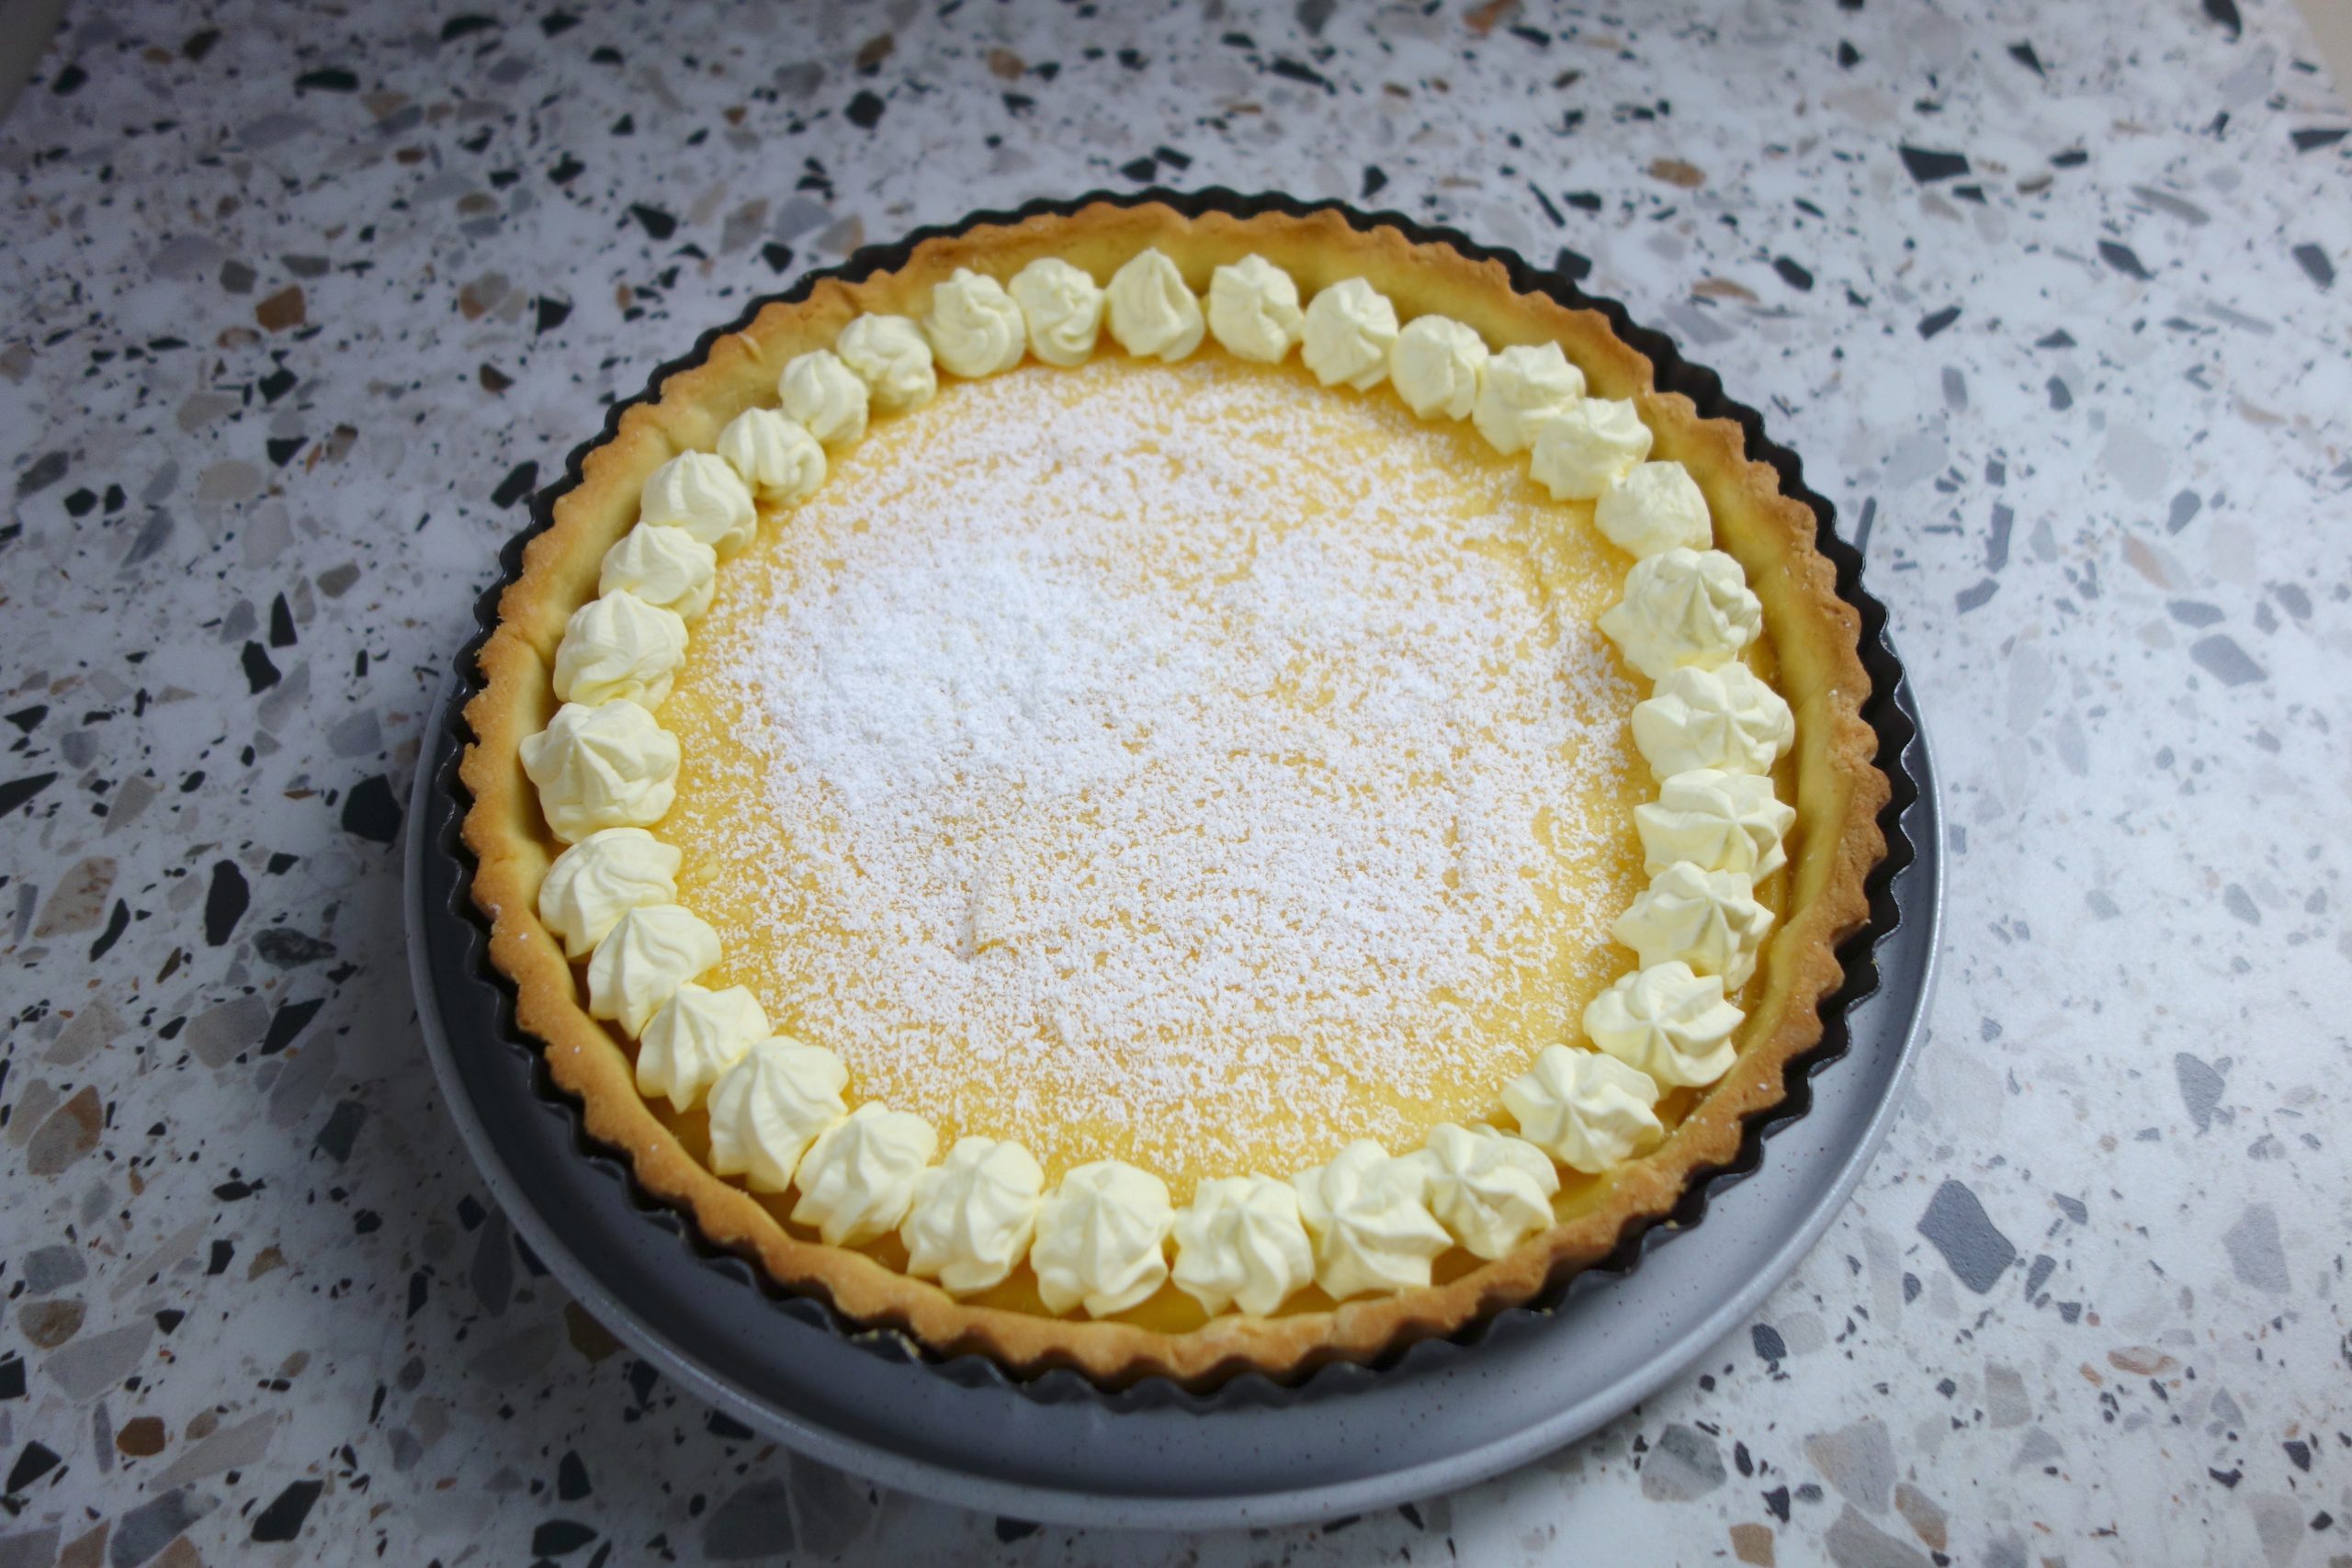 lemon tart with cream and powdered sugar garnish